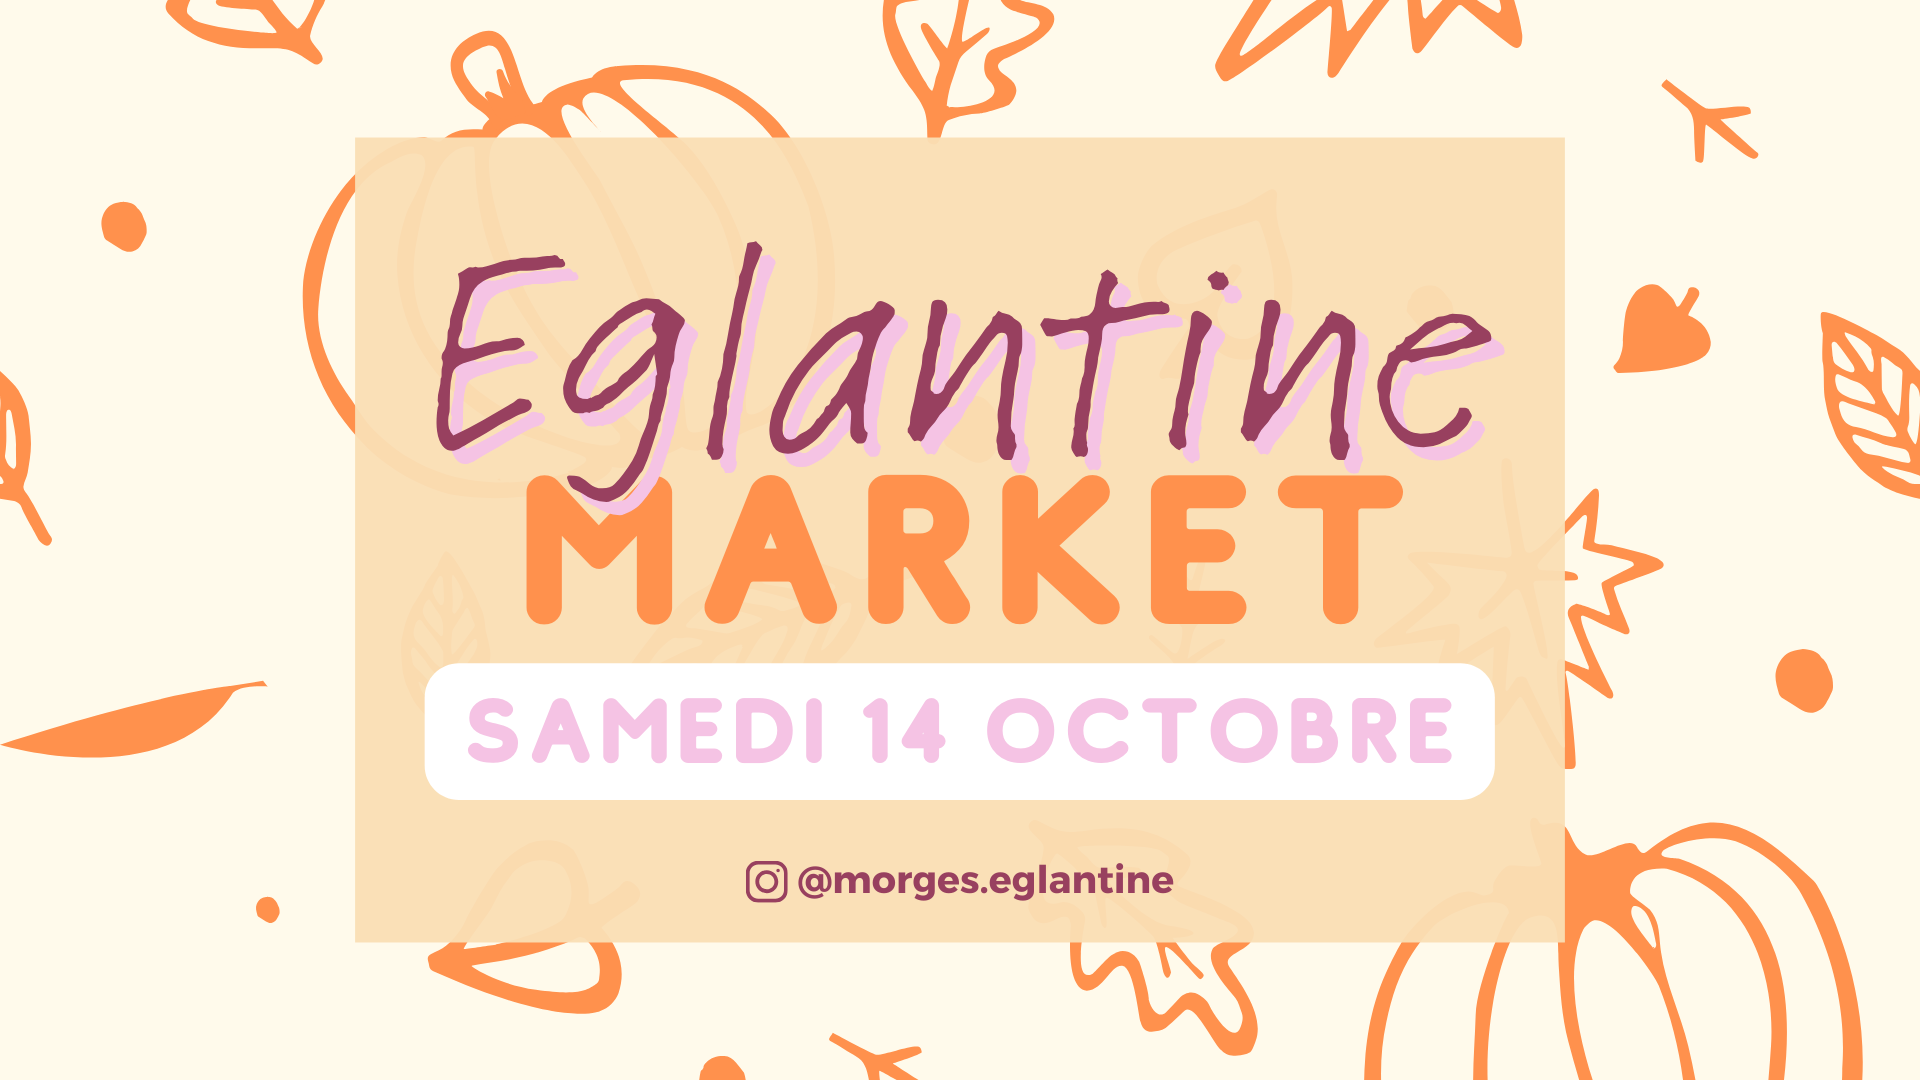 Eglantine Market